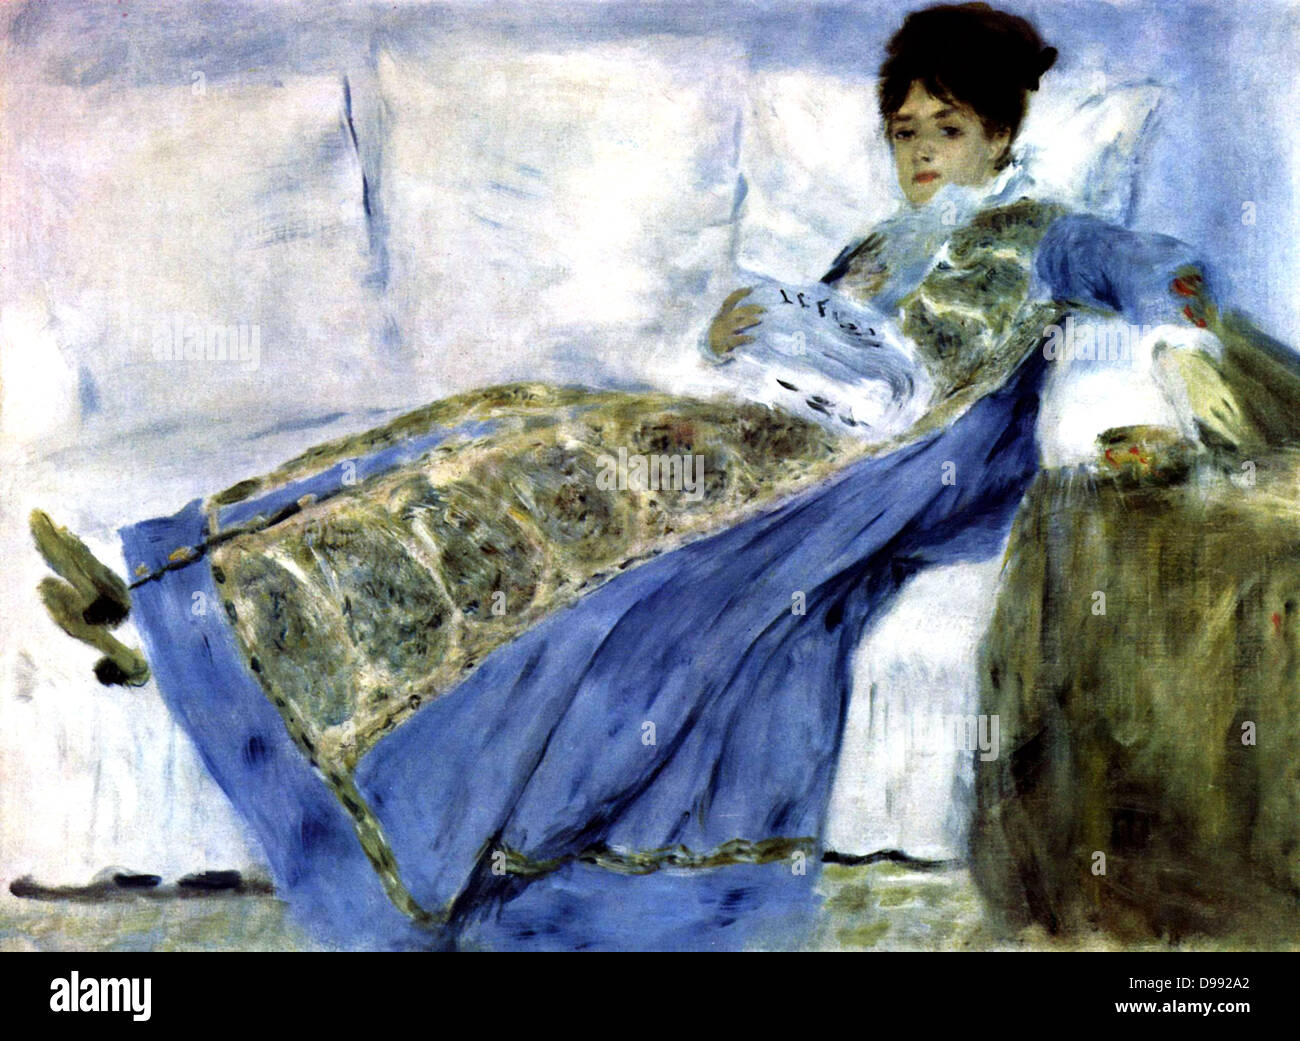 Madame Monet su un divano' anche chiamato 'Madame denaro leggendo Le Nozze di Figaro", 1872. Olio su tela. Pierre-Auguste Renoir (1841-1919), pittore francese. Camille Doncieux (d1879) moglie di Claude Monet. Ritratto blu femmina Foto Stock